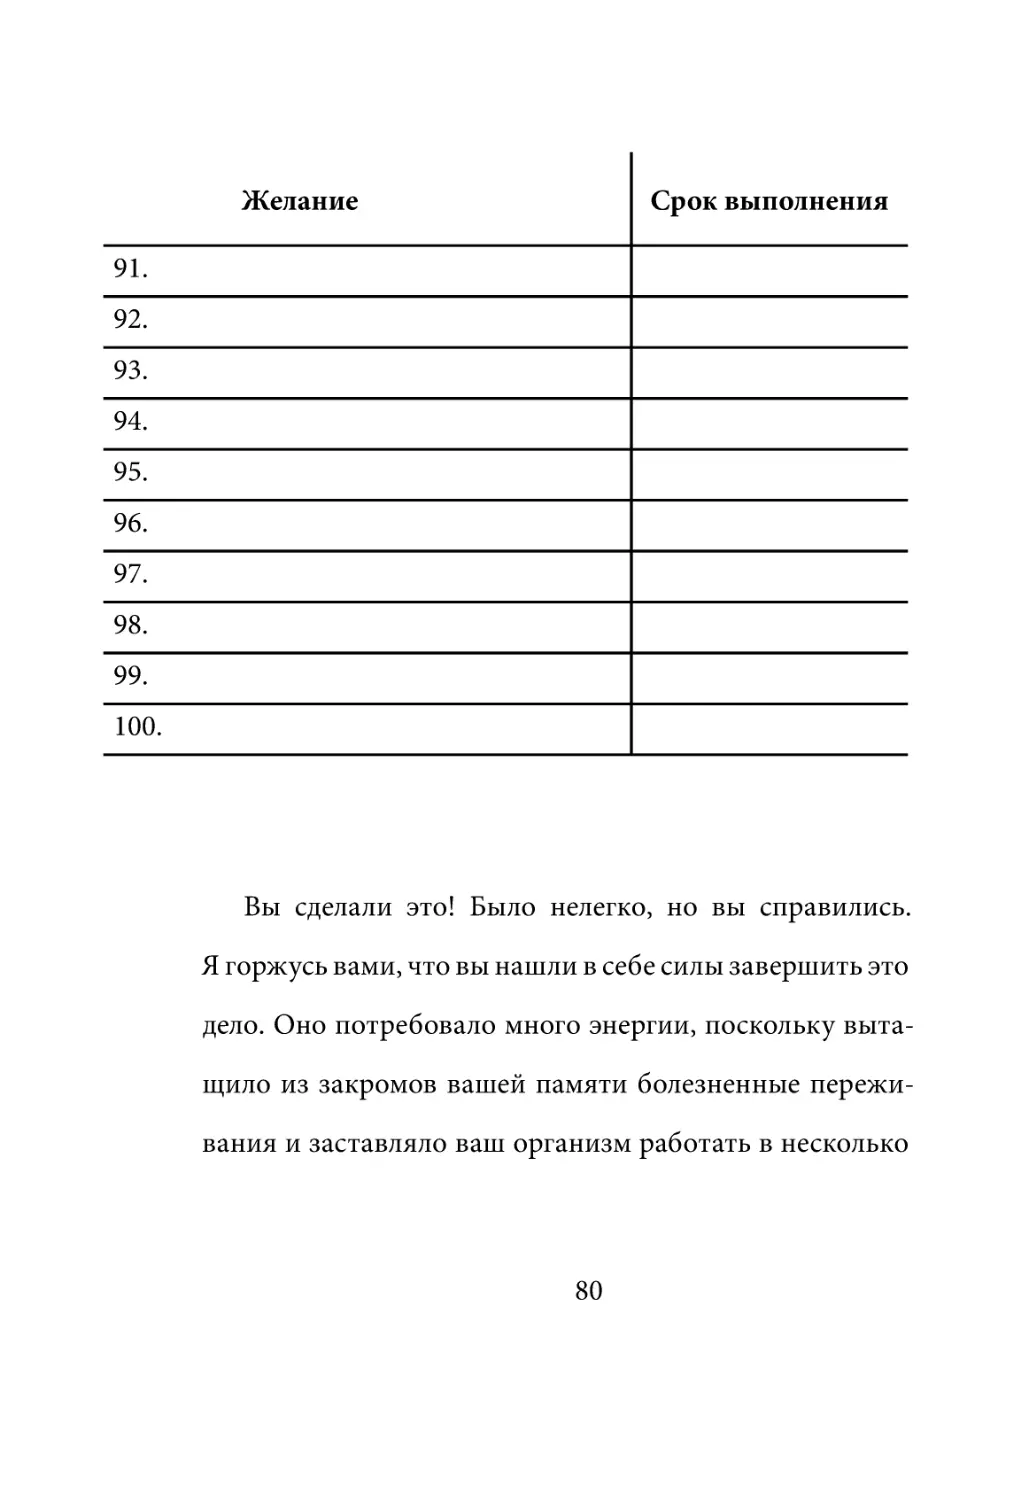 Sergey_Filippov_Dnevnik_samorazvitia_Evolyutsia_Vnutrennego_Sostoyania_80.pdf (p.80)